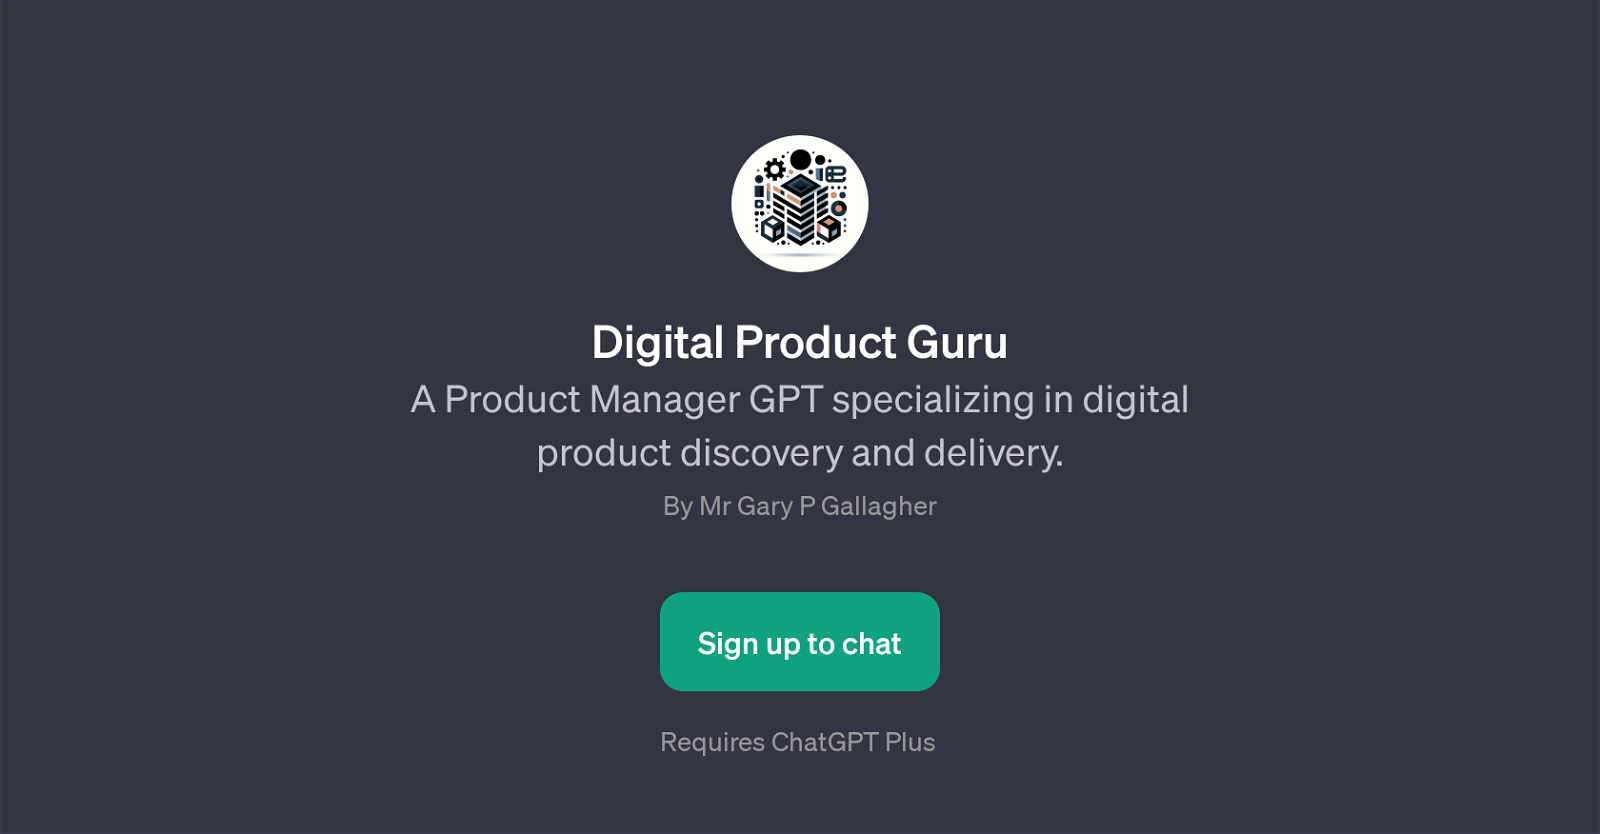 Digital Product Guru website